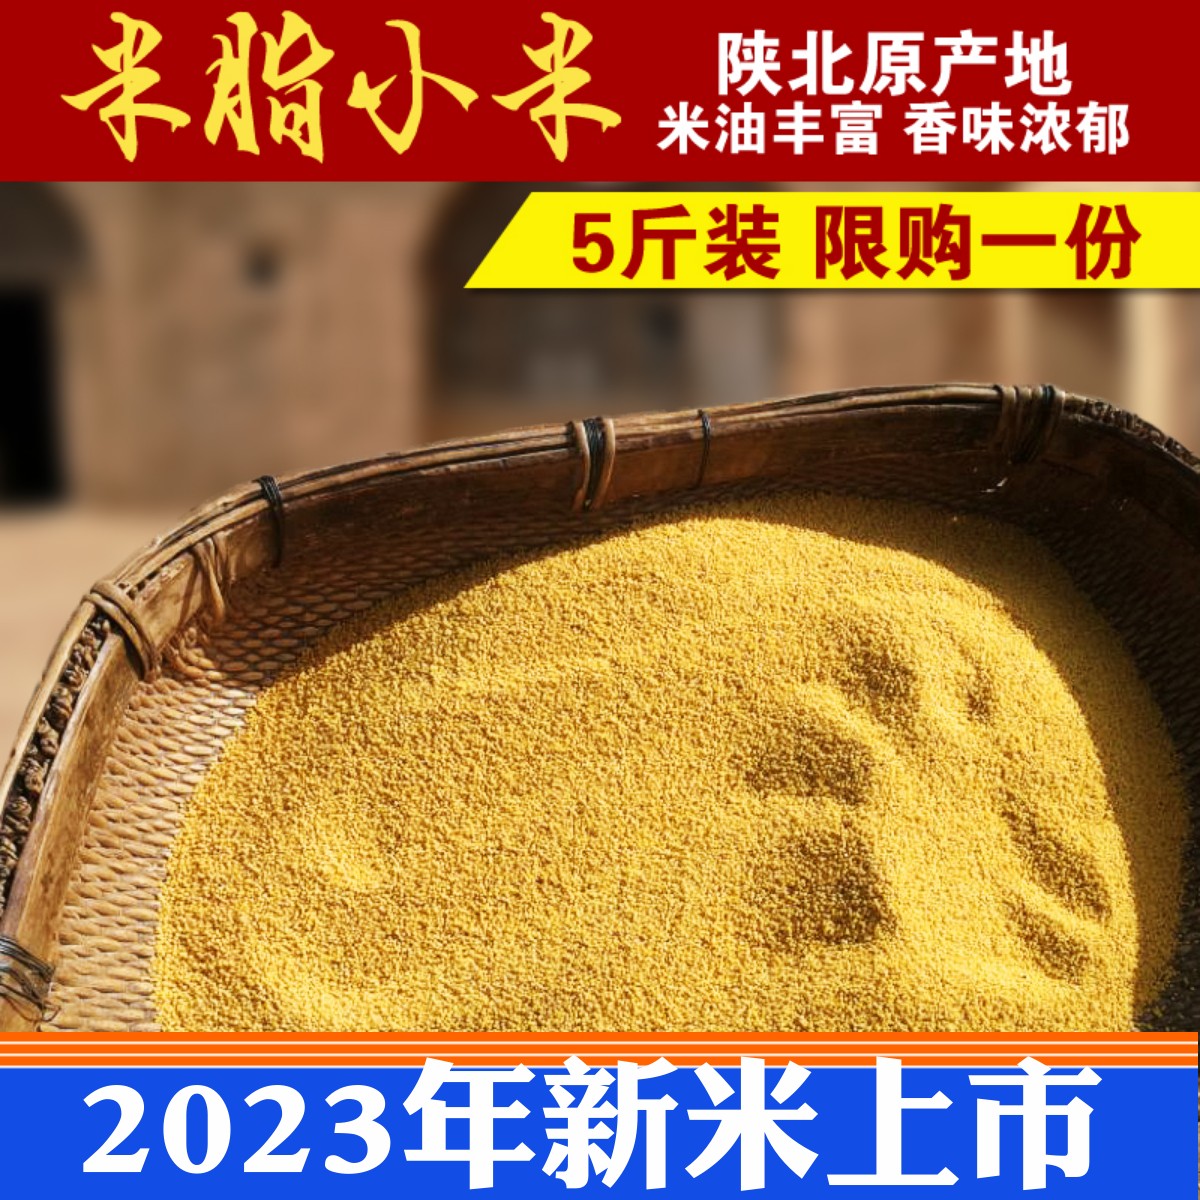 米脂黄小米陕北农家自产2023新米陕西小黄米油小米新米杂粮粥5斤